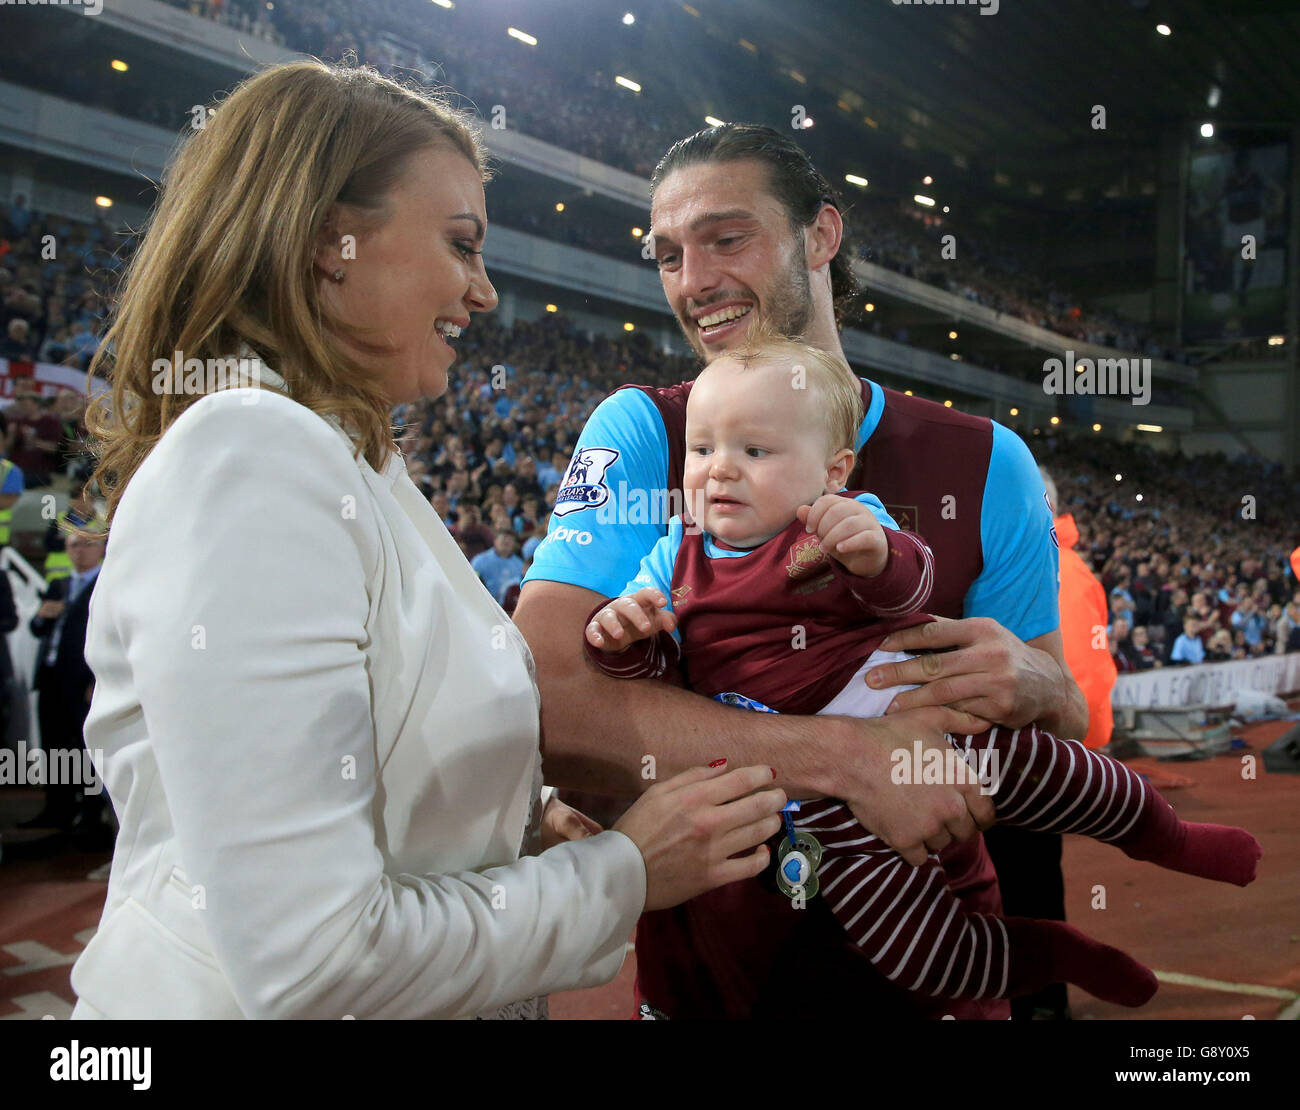 Andy Carroll di West Ham United con la sua fidanzata Billi Mucklow e il figlio Arlo dopo il fischio finale durante la partita Barclays Premier League a Upton Park, Londra. Foto Stock